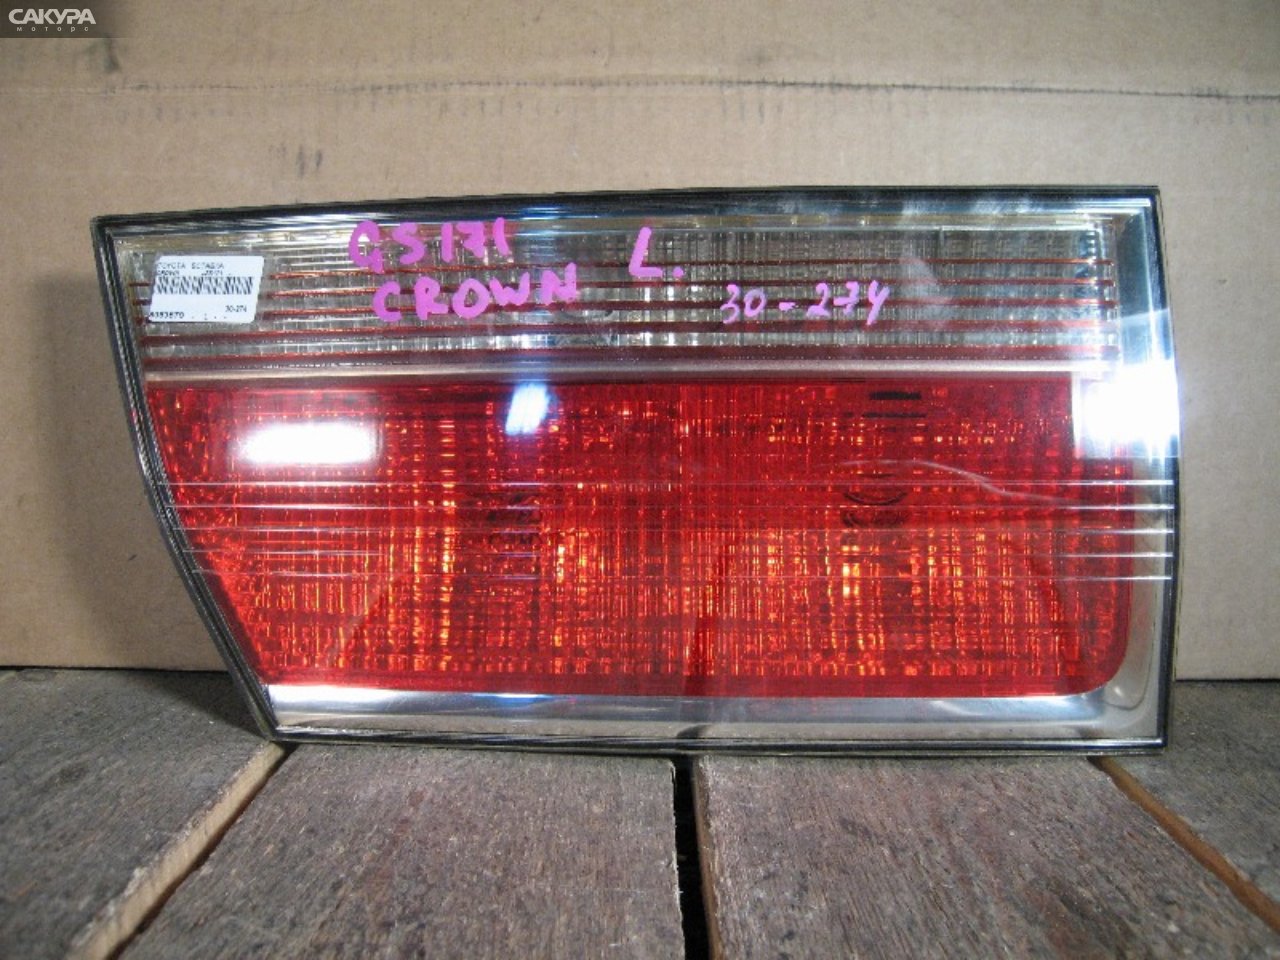 Фонарь вставка багажника левый Toyota Crown JZS171 30-274: купить в Сакура Абакан.